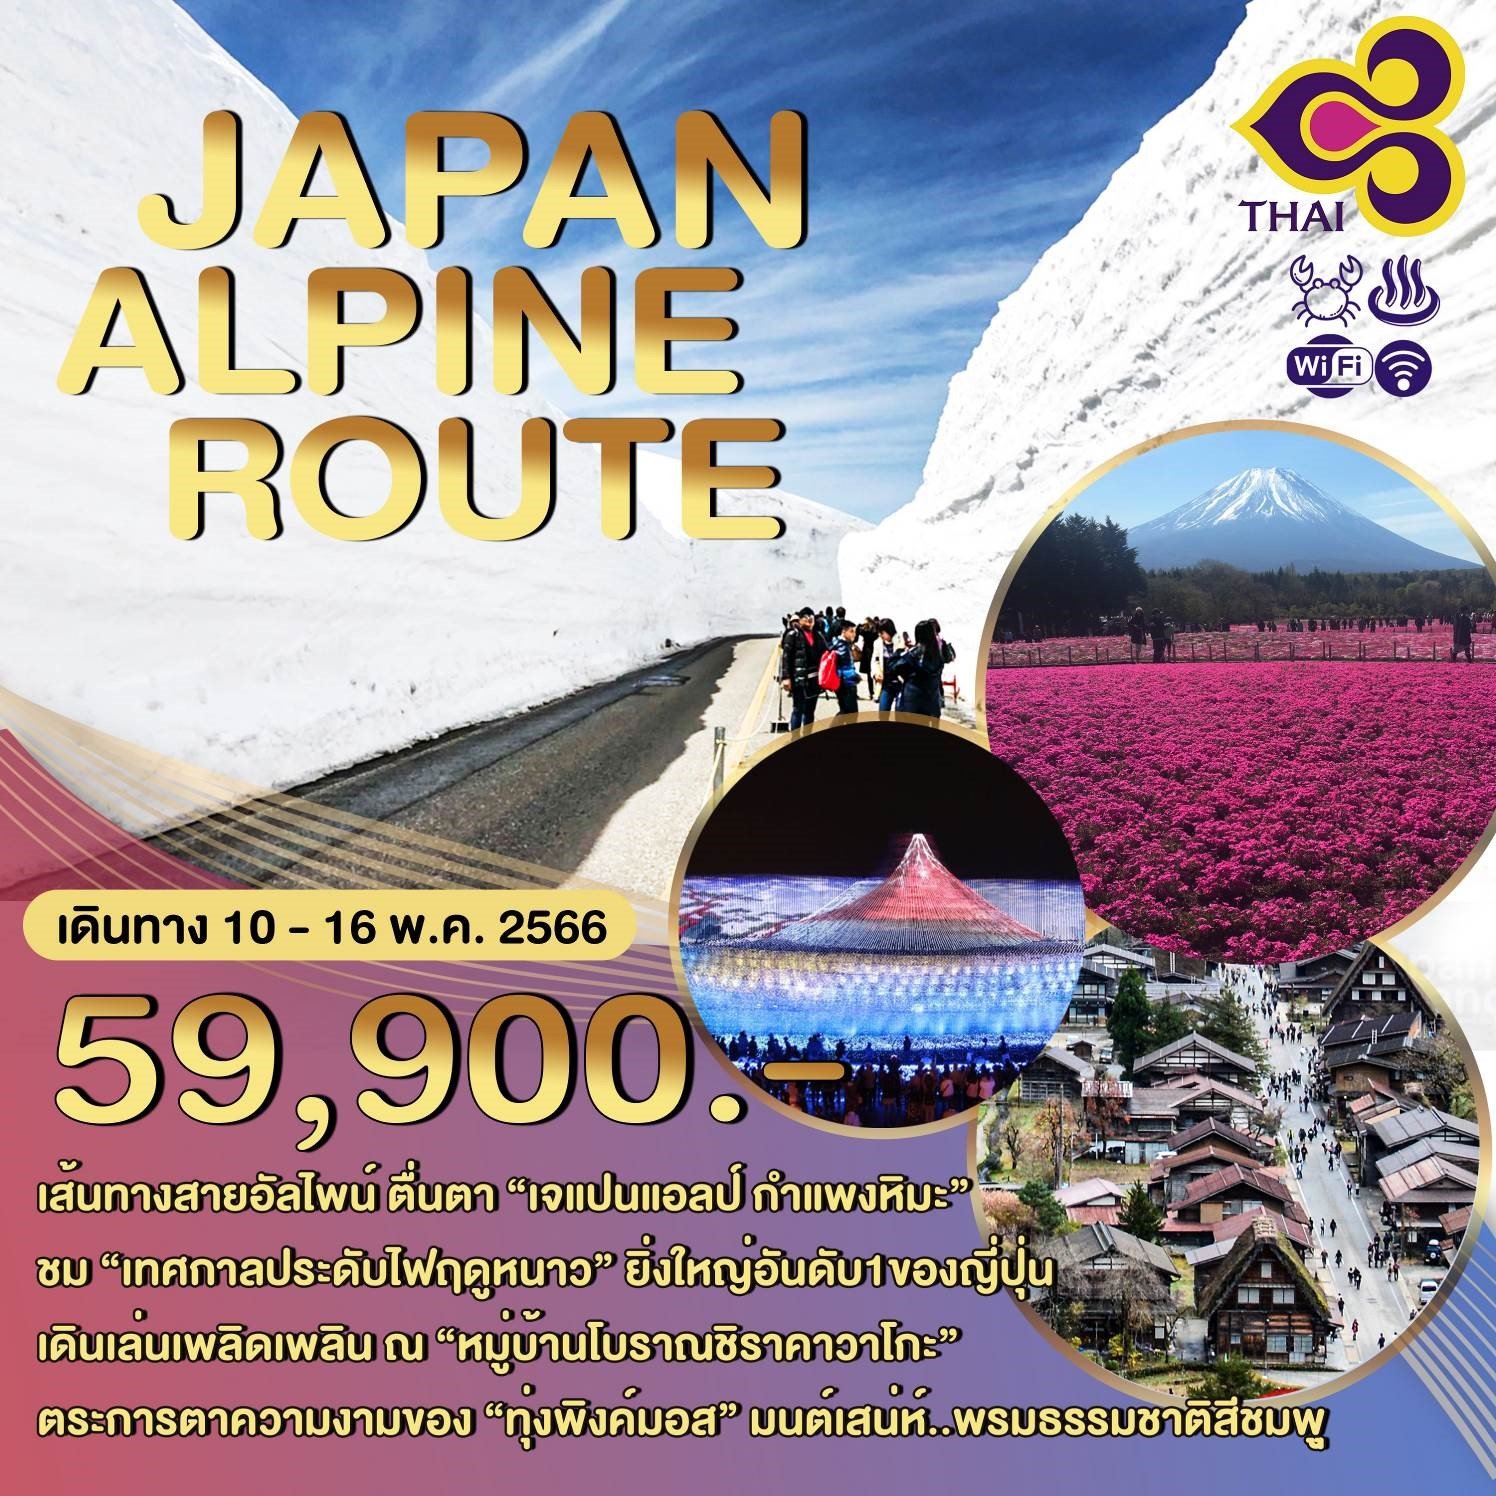 โปรแกรมทัวร์ญี่ปุ่น JAPAN ALPINE ROUTE 7 วัน 4 คืน